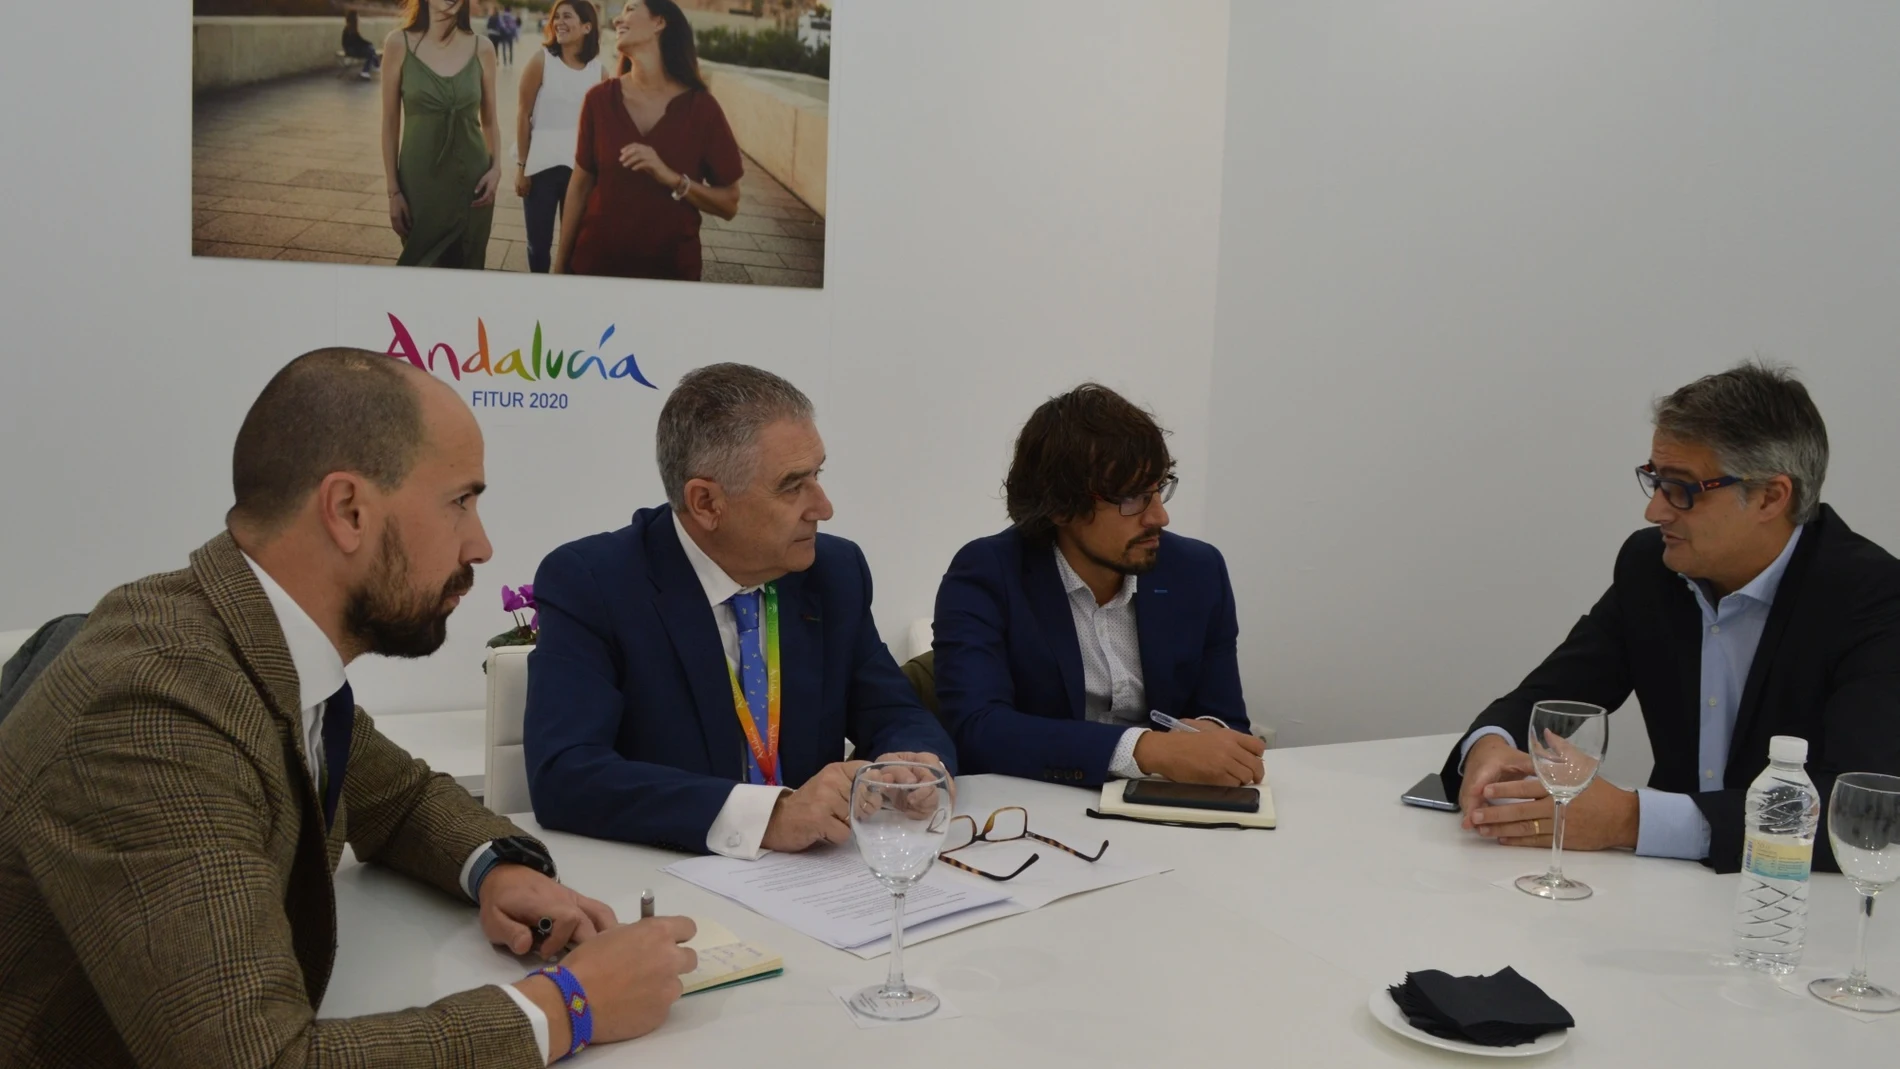 Turismo.- Fitur.- La Junta se reúne con aerolíneas internacionales para "consolidar" la conectividad aérea de Andalucía